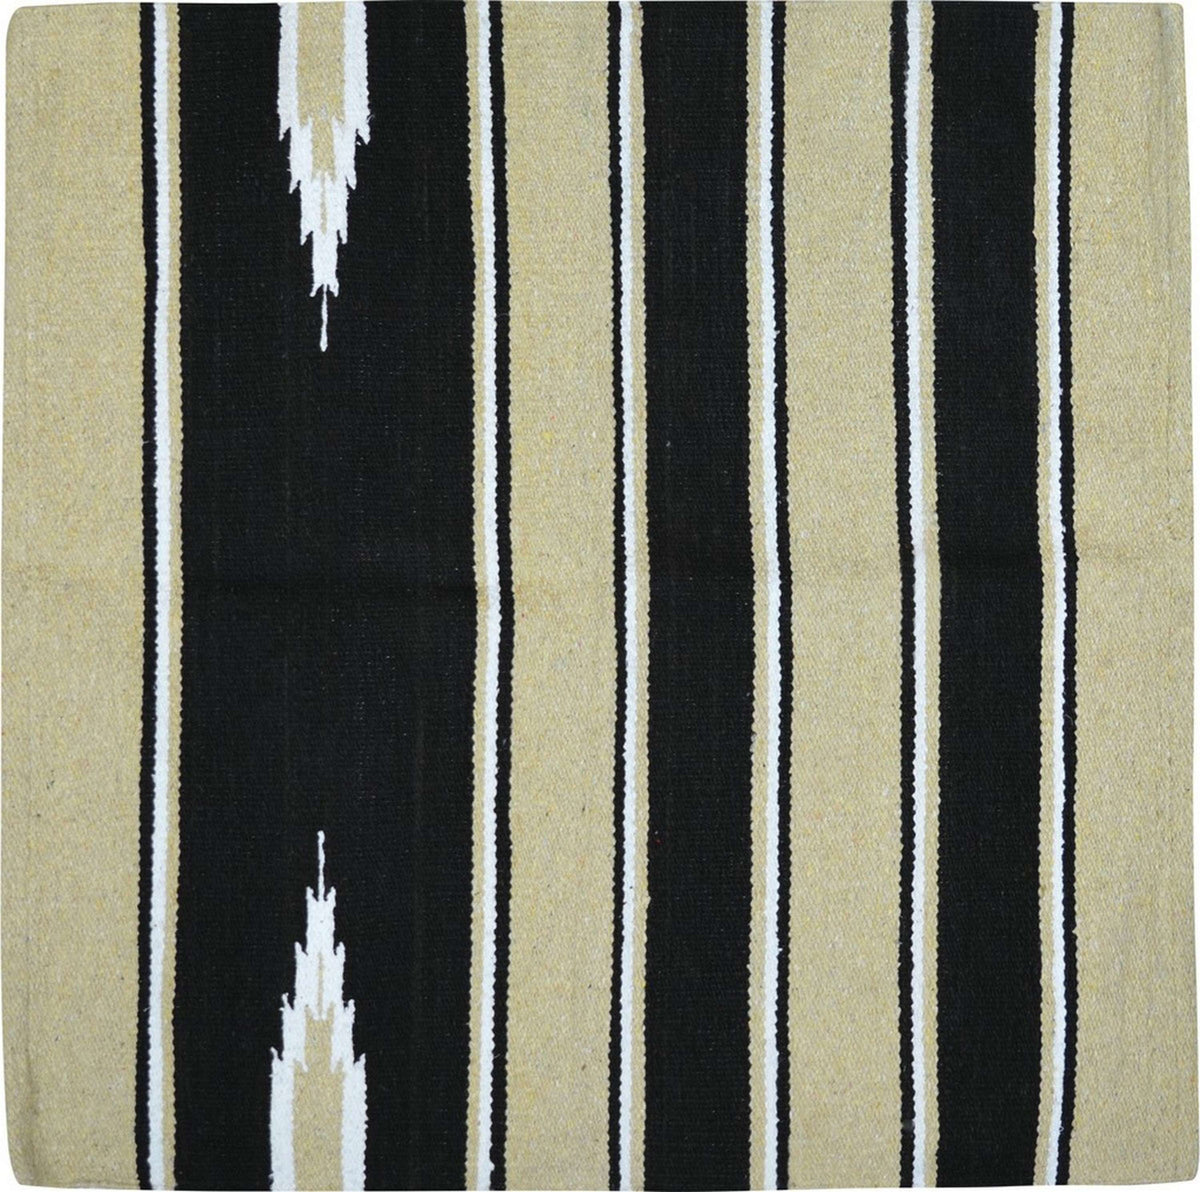 Randol's Navajo Show Blanket Beige/Schwarz/Weiß